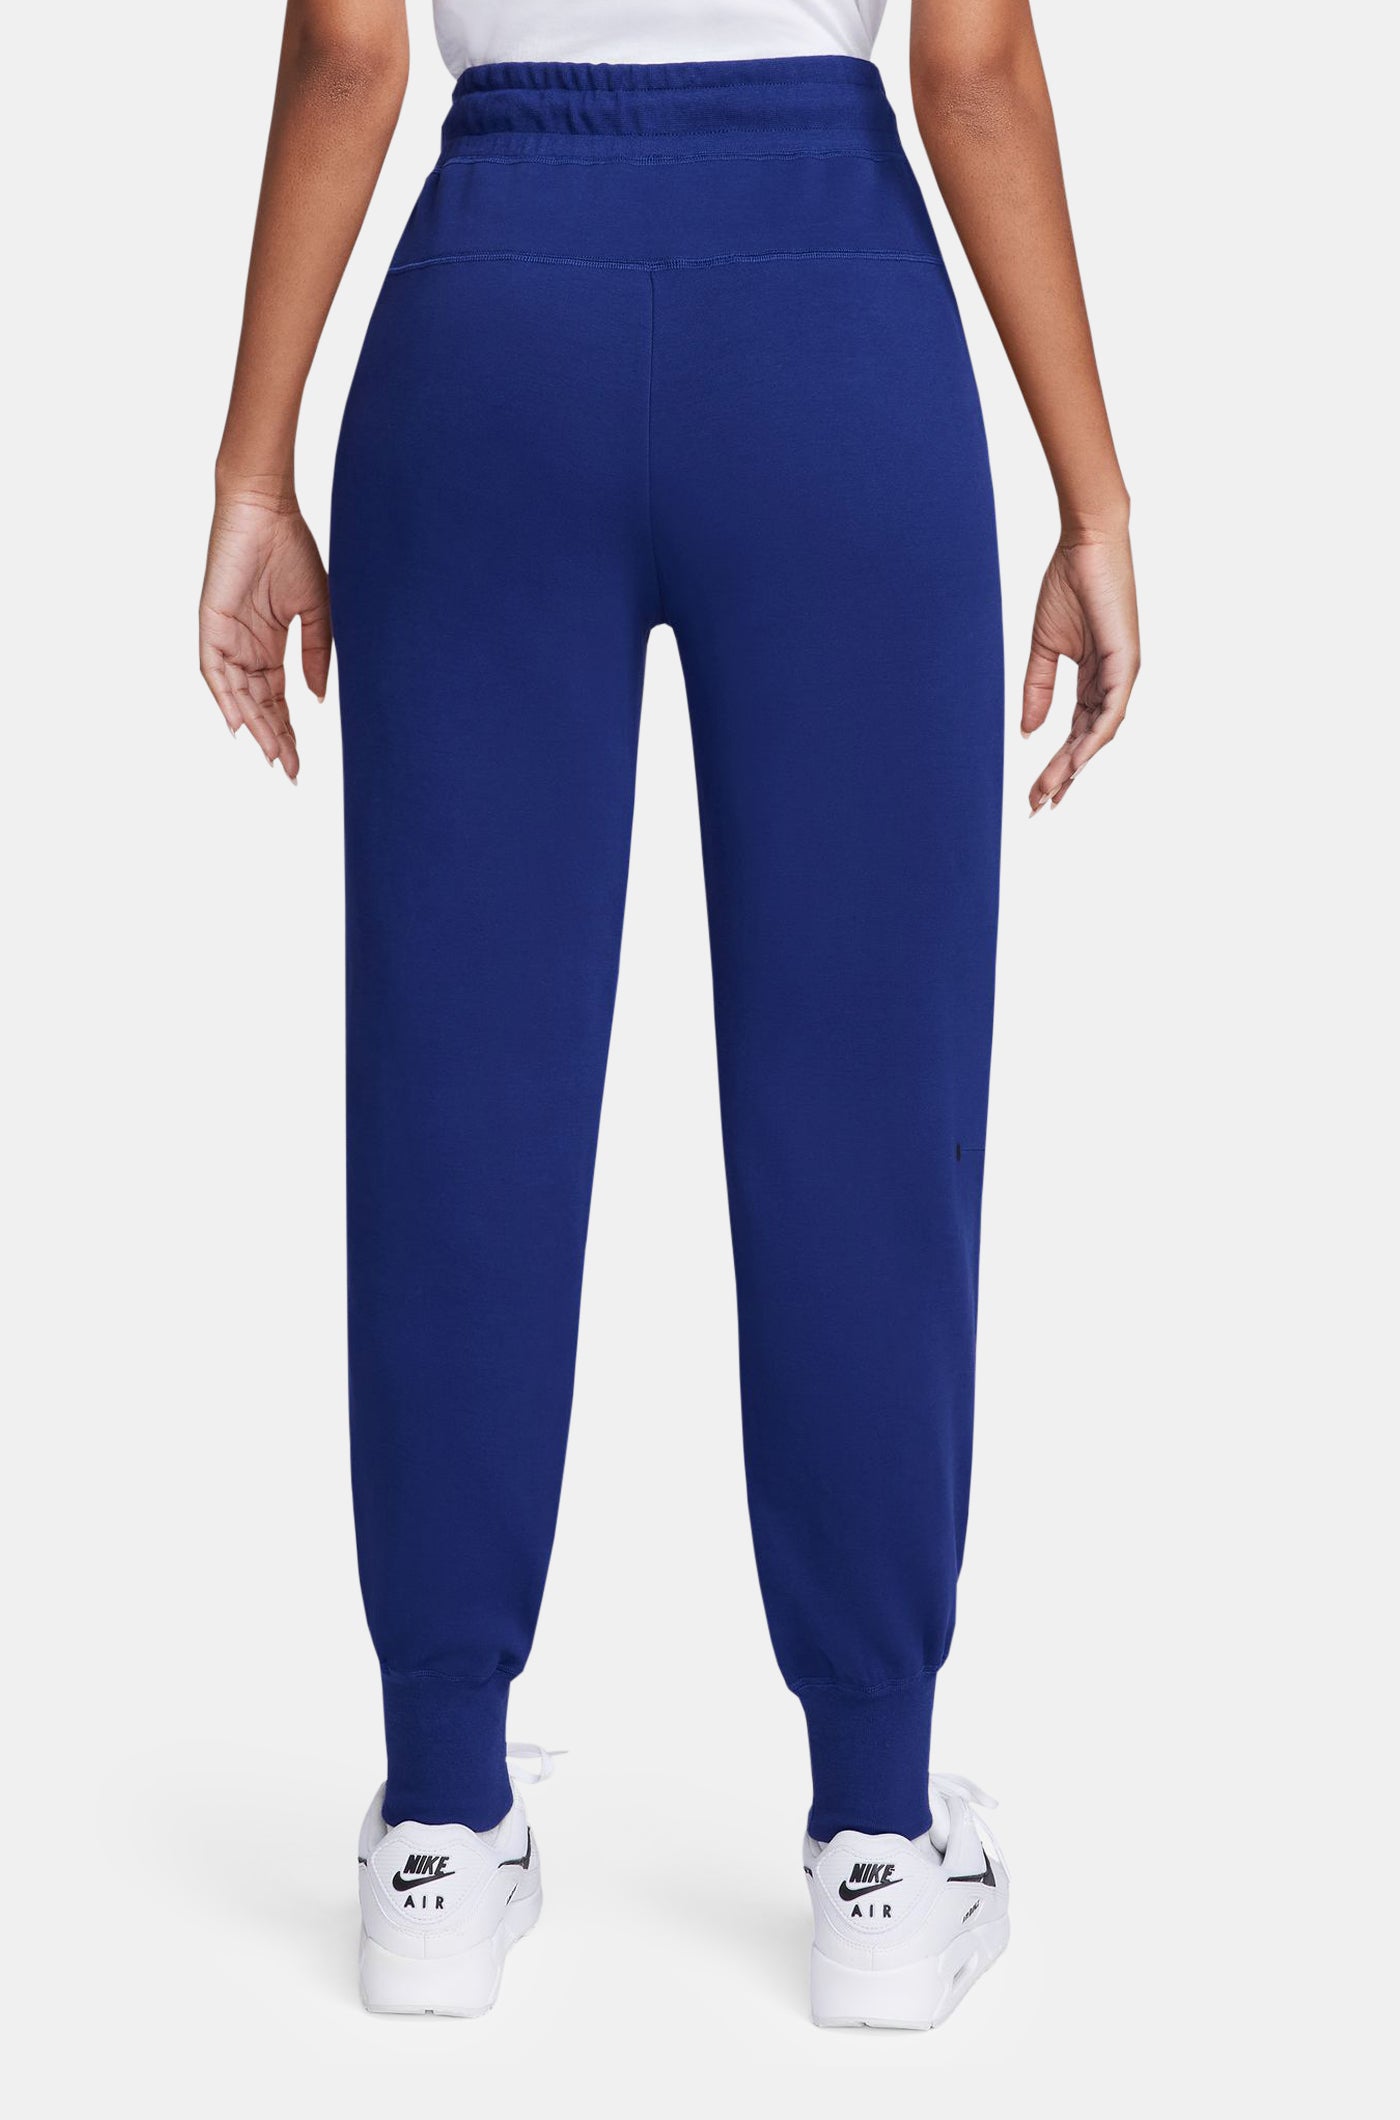 Pantalon Tech bleu royal Barça Nike - Femme